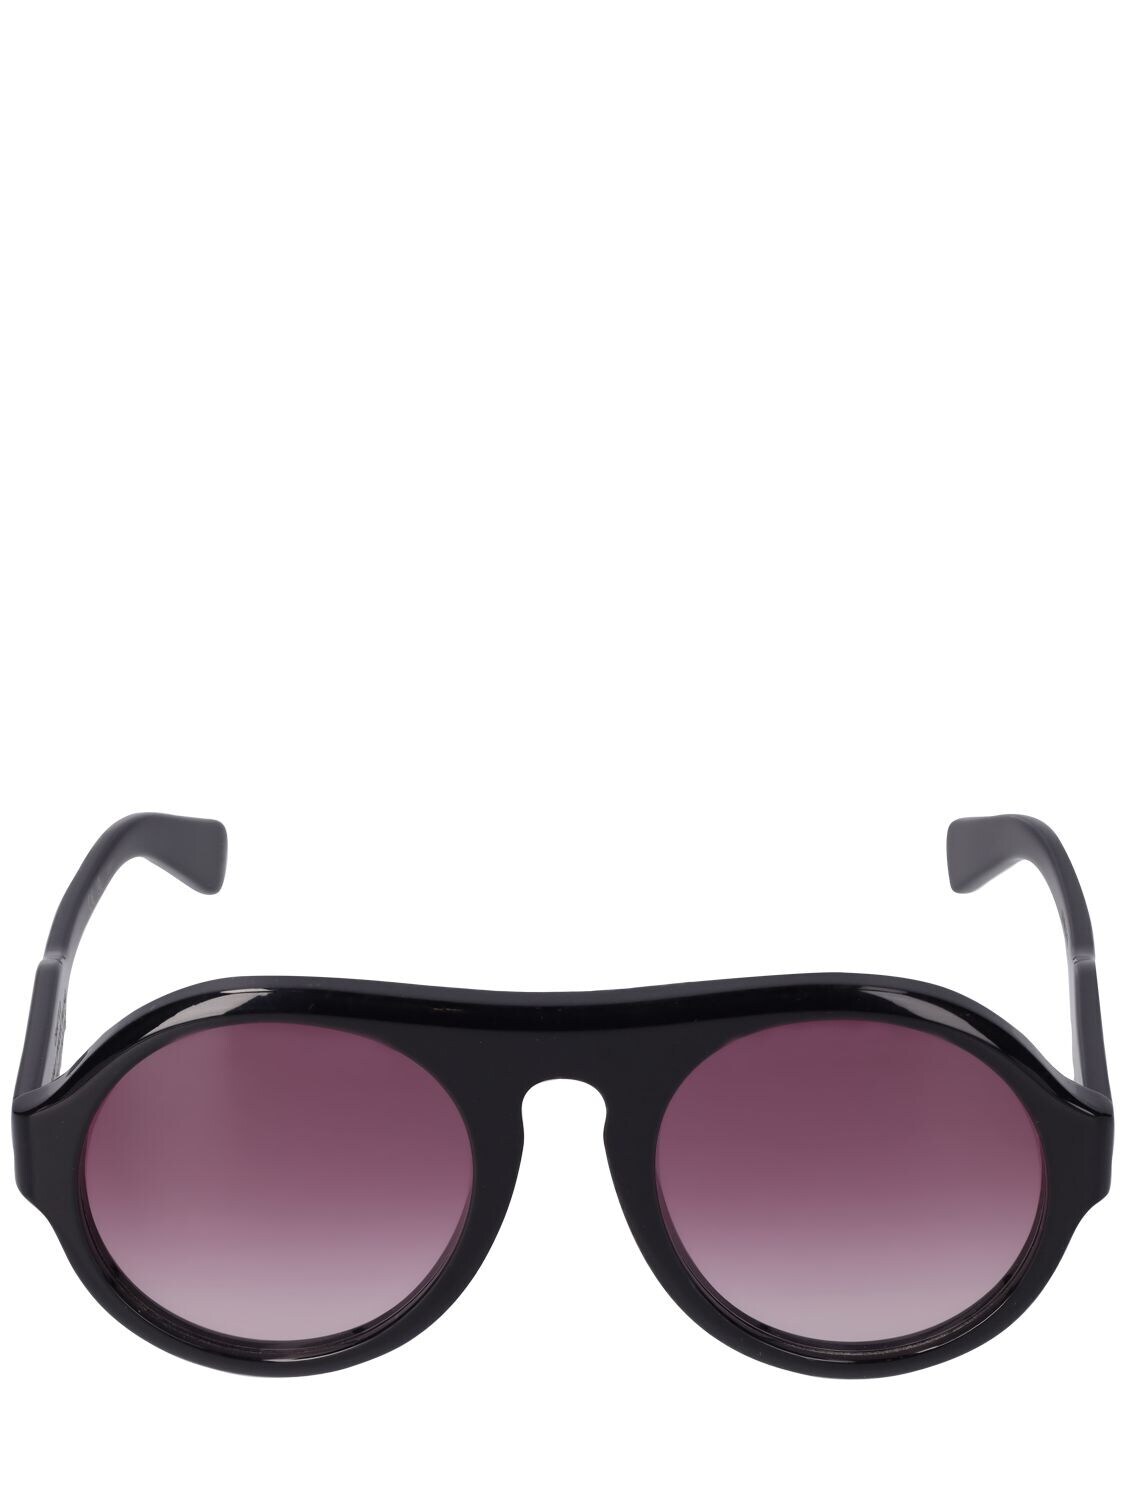 CHLOÉ Reace Pilot Bio-acetate Sunglasses in black / red